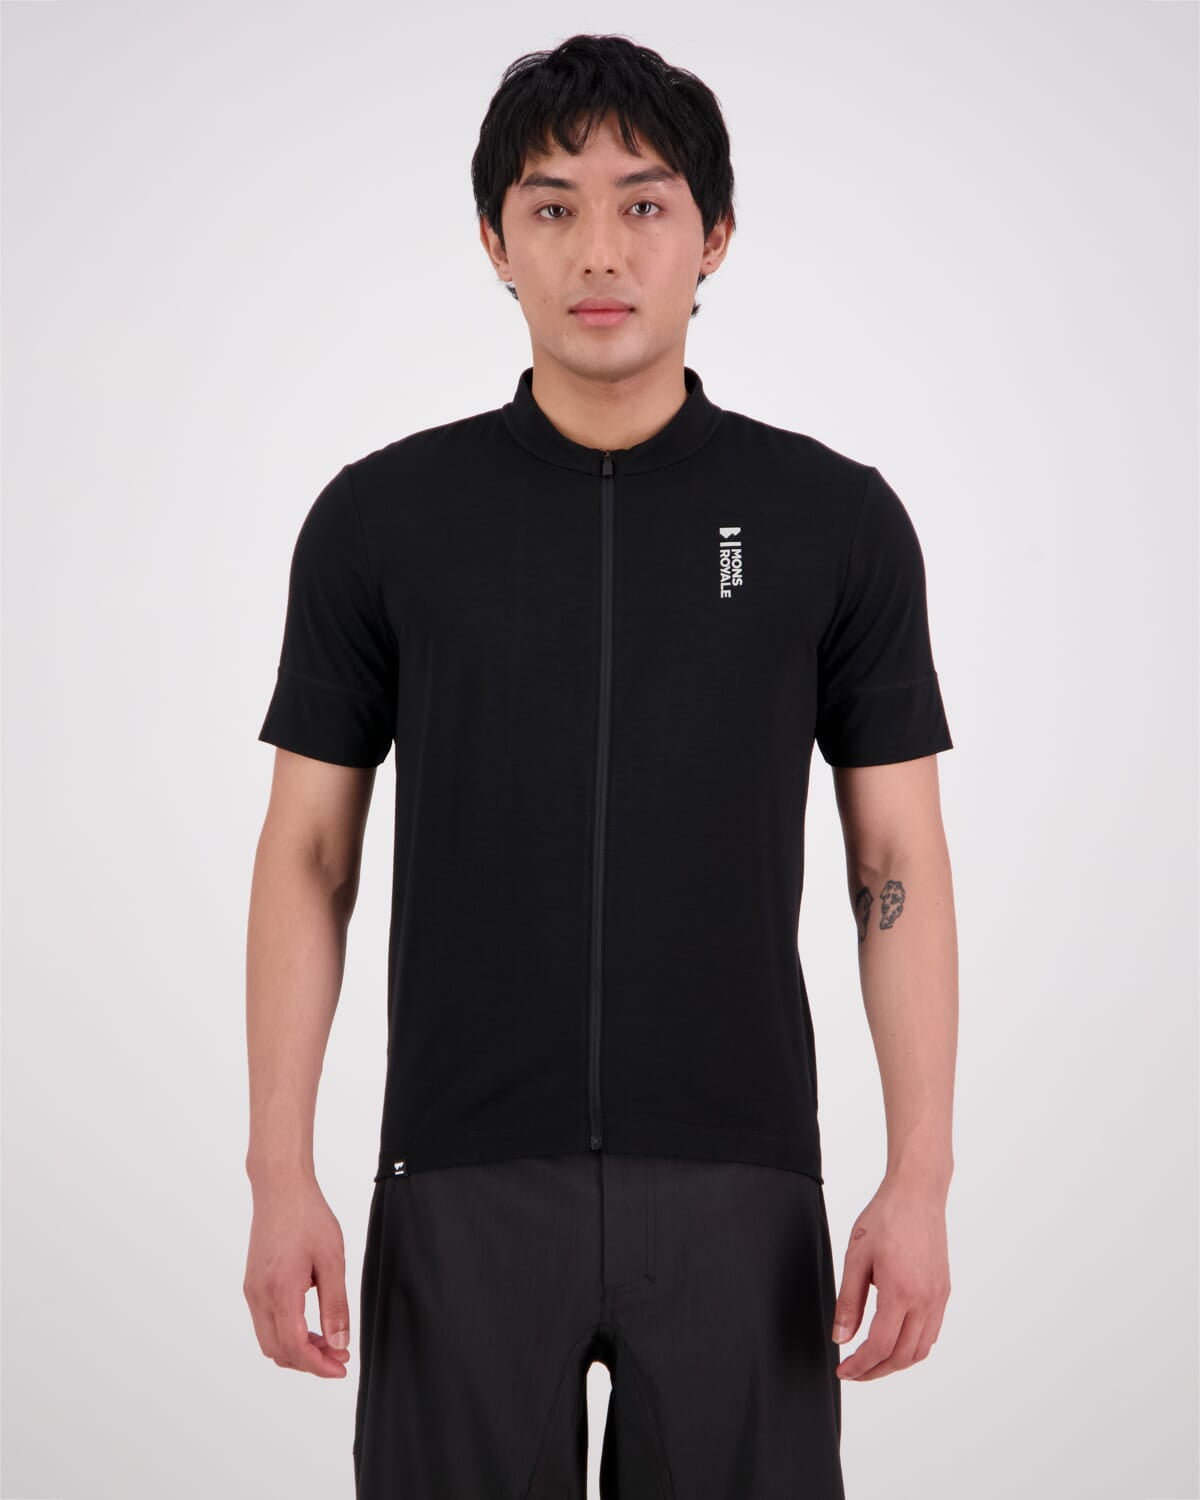 Roam Cargo Merino Shift Full Zip T-Shirt - Black